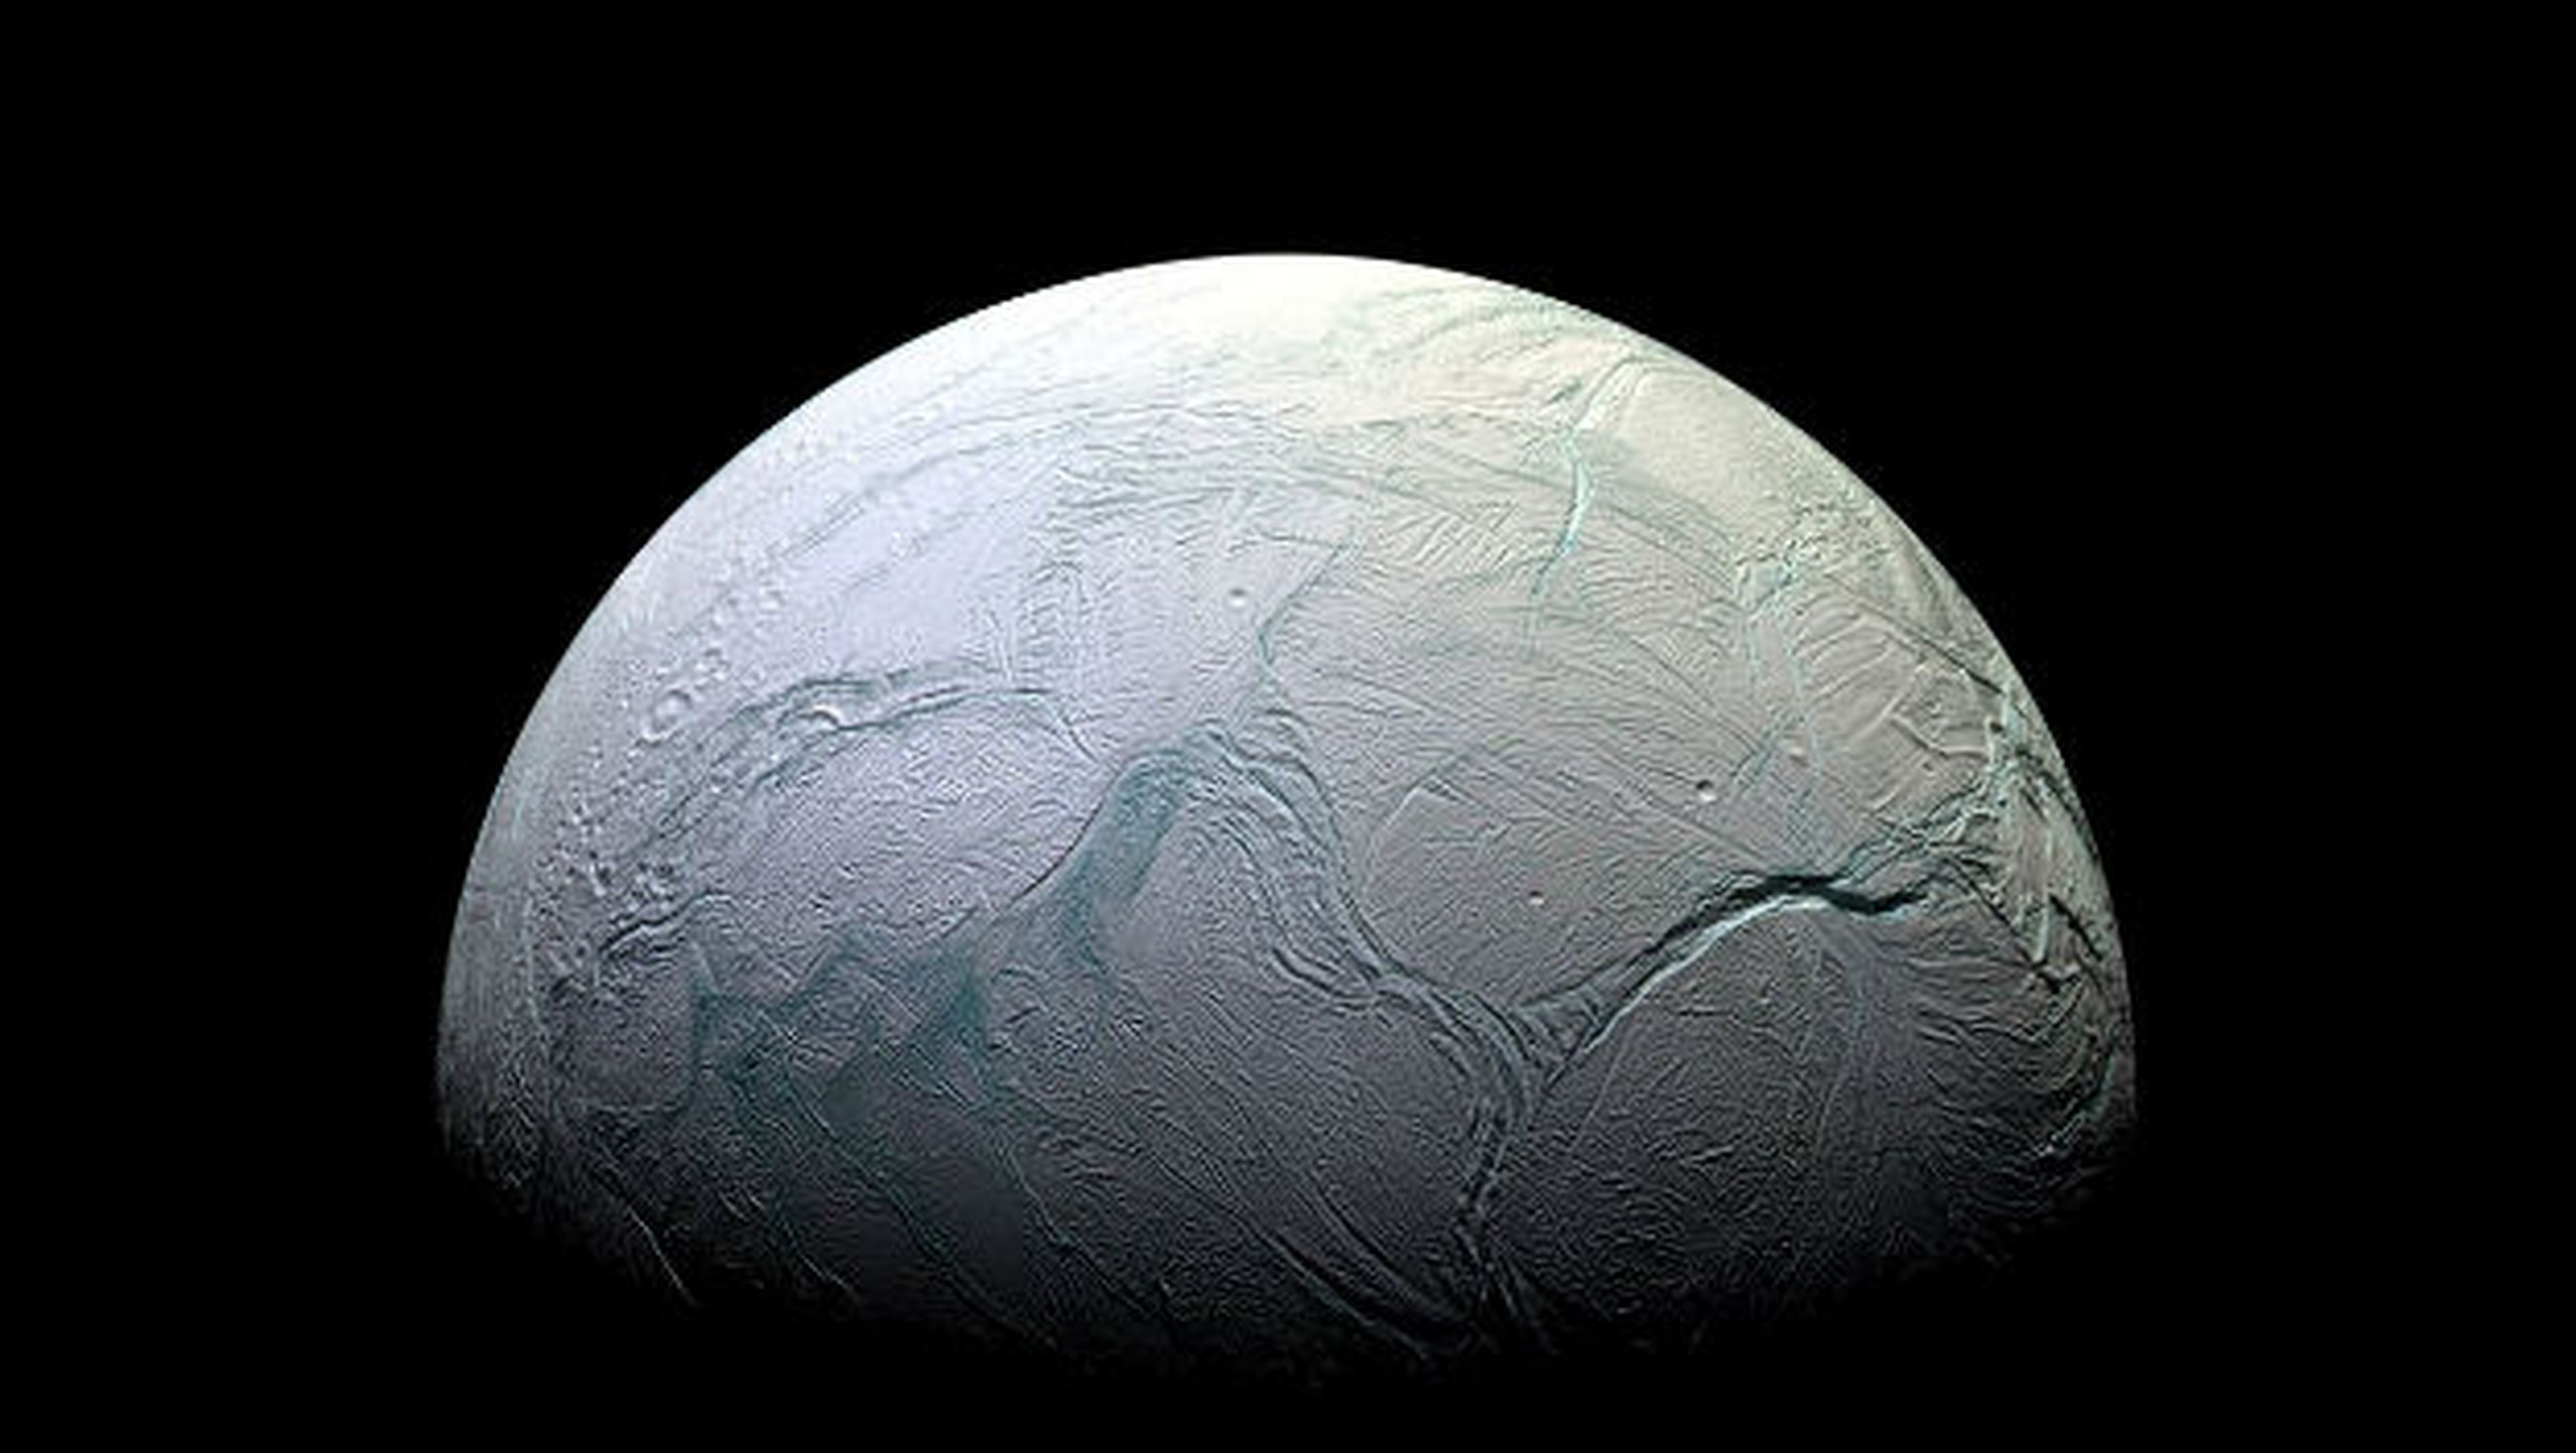 La Luna de Saturno Encélado podría tener vida.